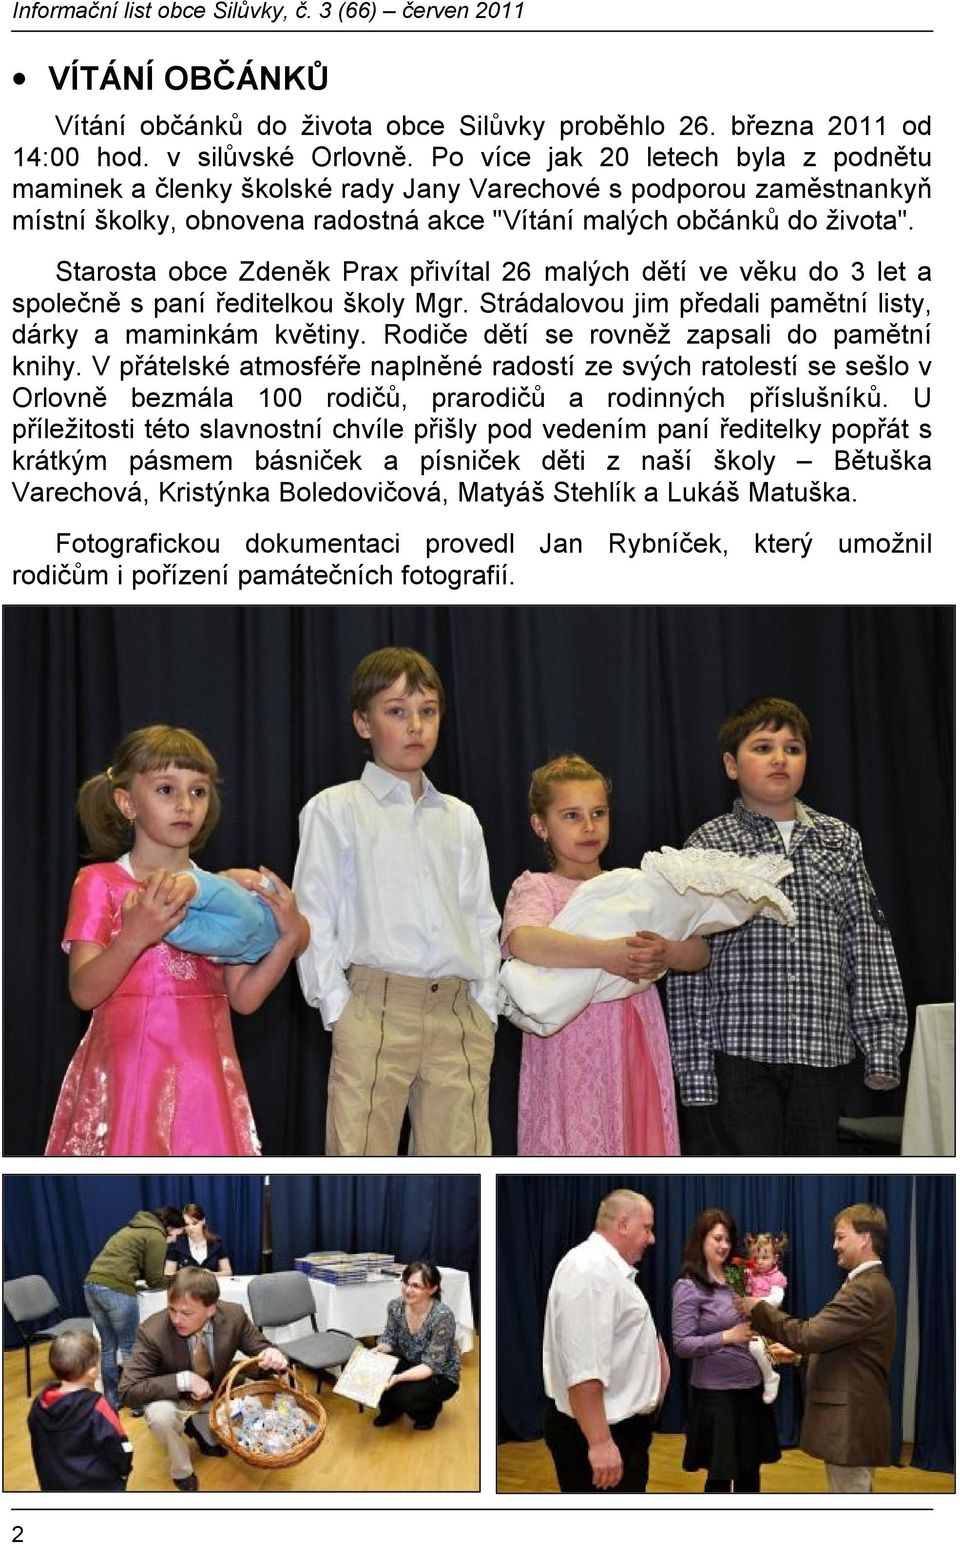 Starosta obce Zdeněk Prax přivítal 26 malých dětí ve věku do 3 let a společně s paní ředitelkou školy Mgr. Strádalovou jim předali pamětní listy, dárky a maminkám květiny.